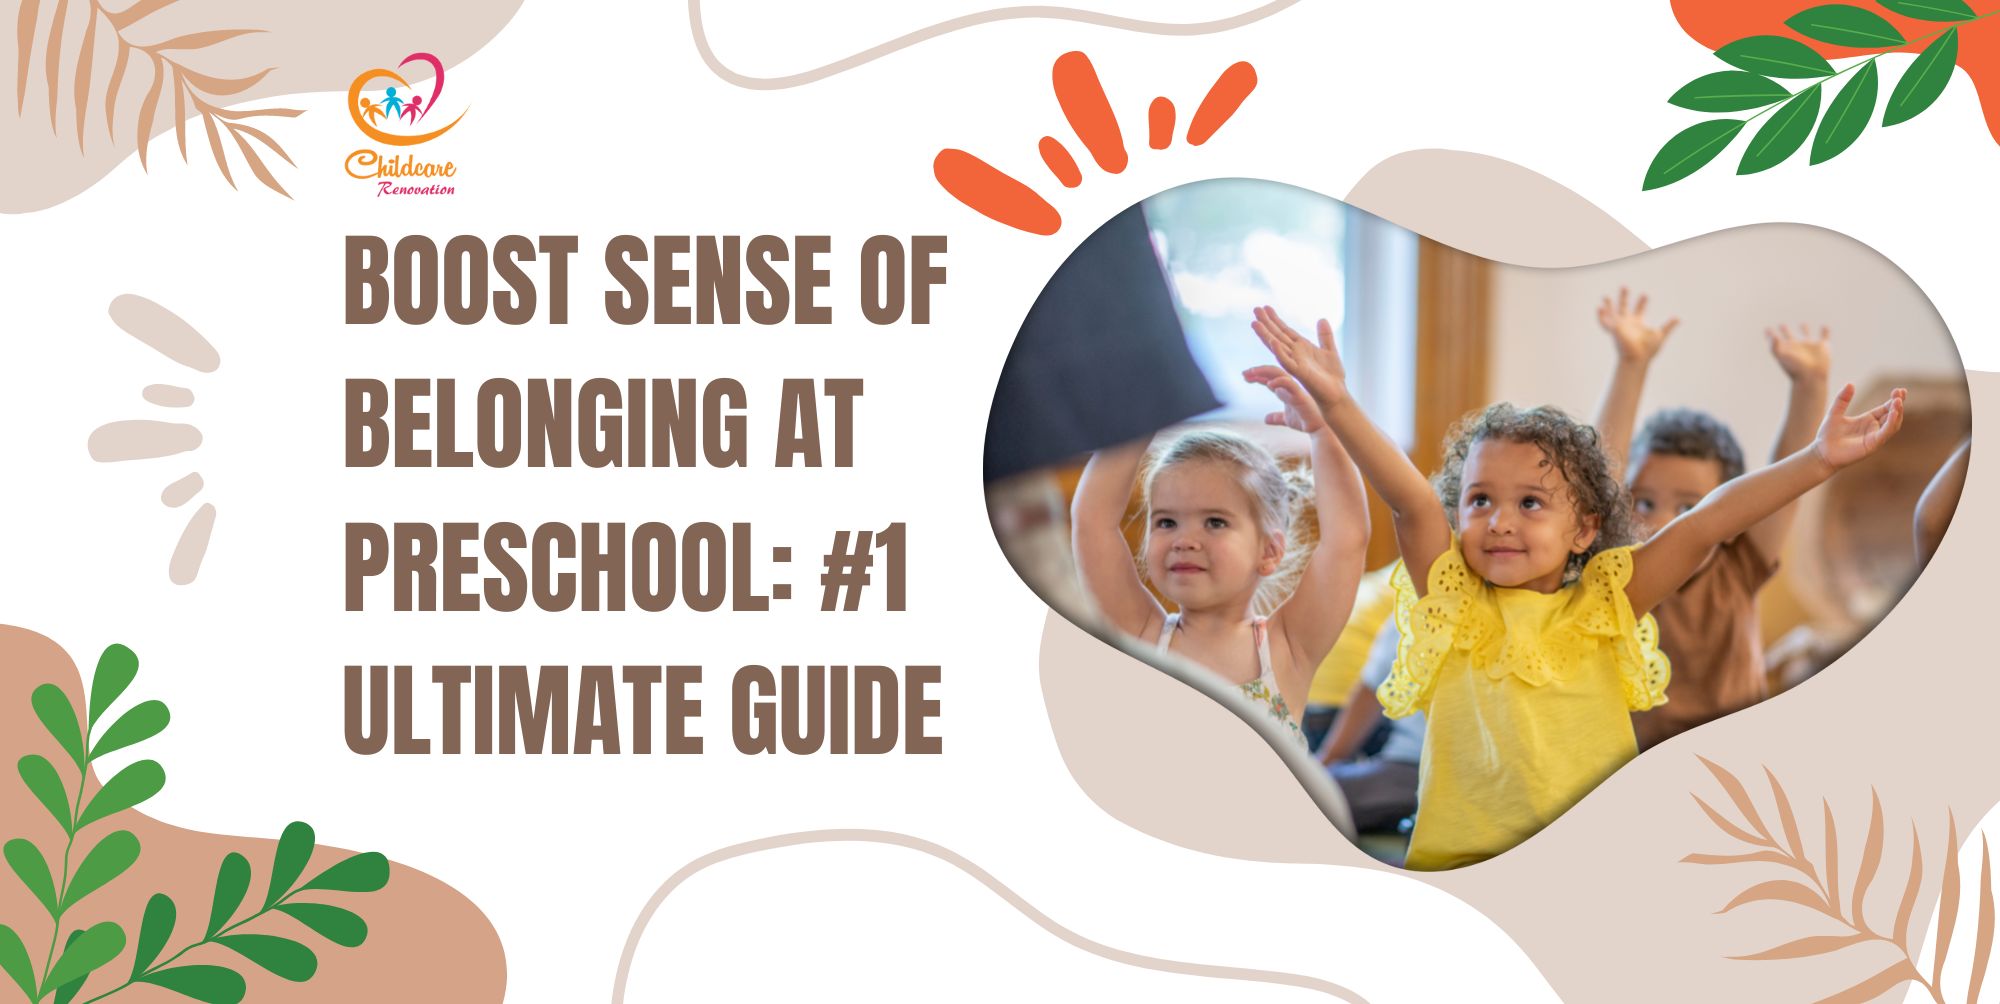 Boost Sense of Belonging at Preschool: #1 Ultimate Guide